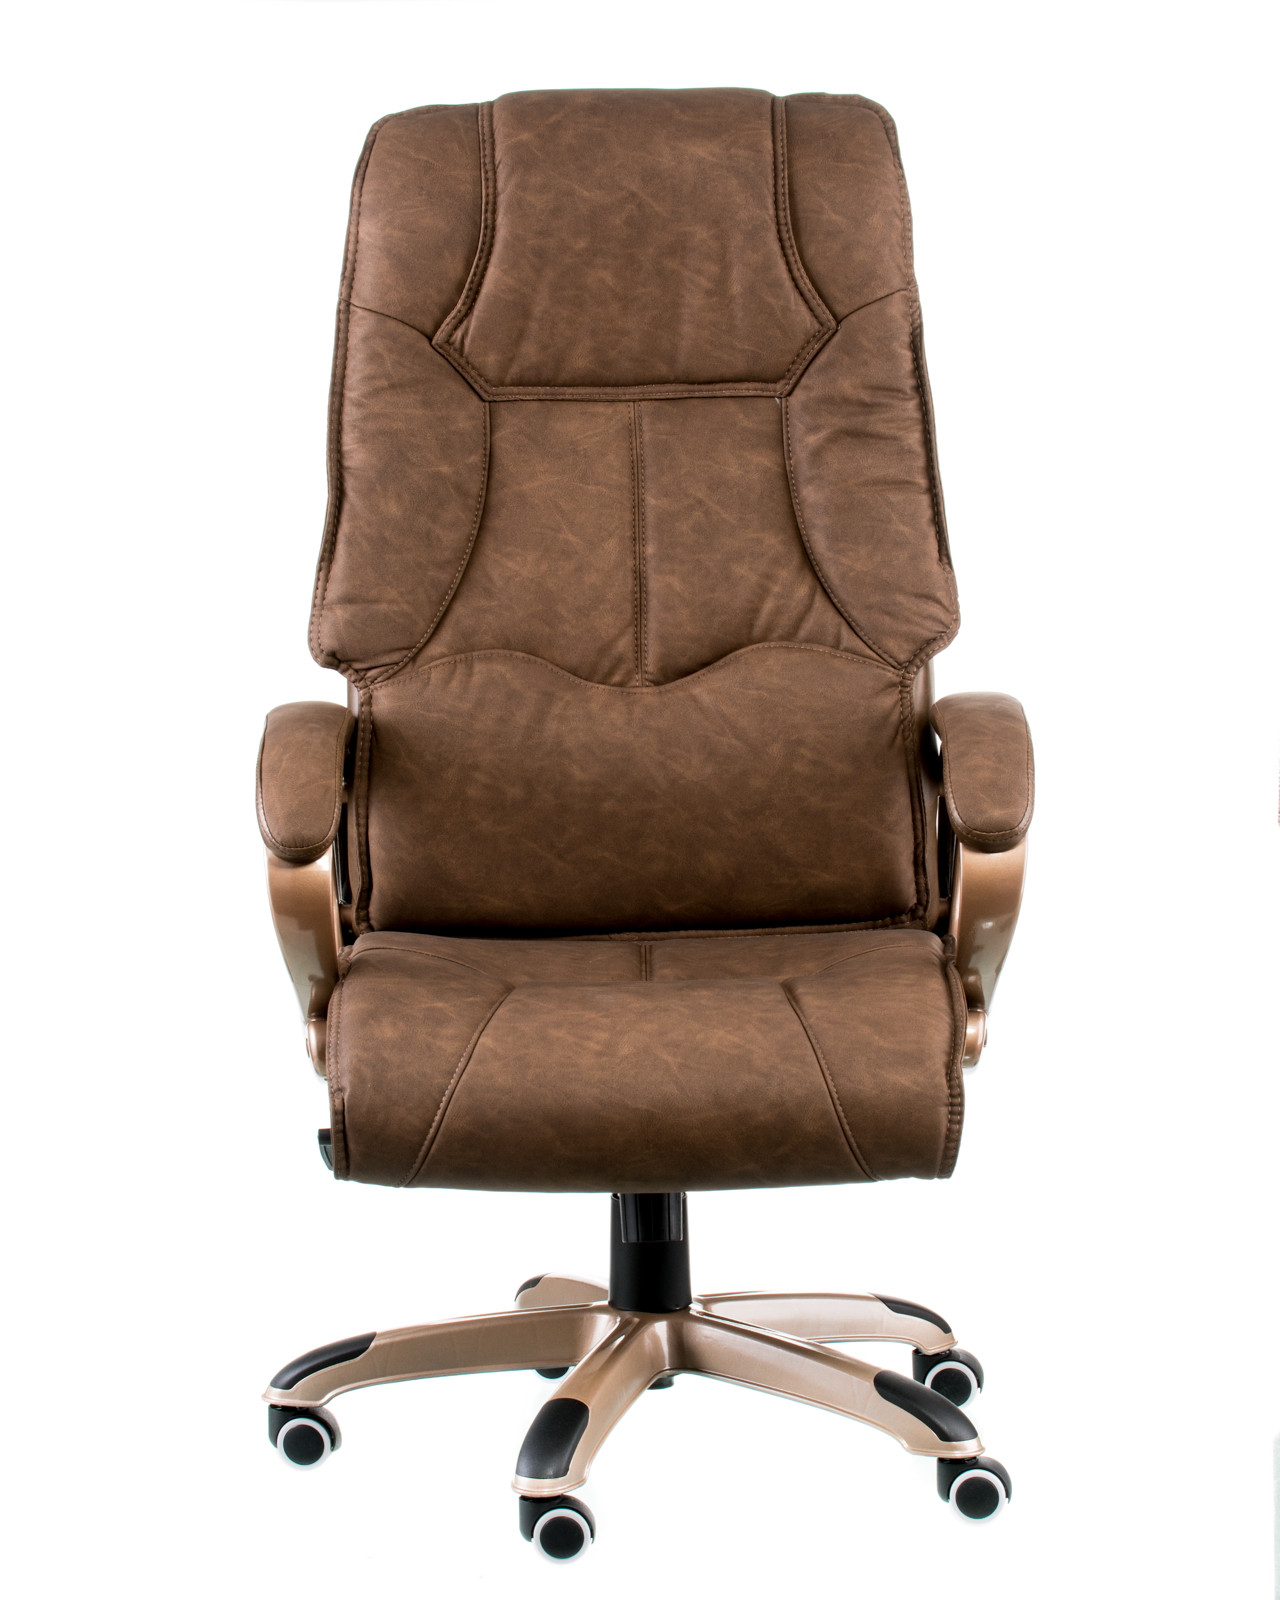 Кресло офисное TPRO- Spеcial4You Corvus E1014